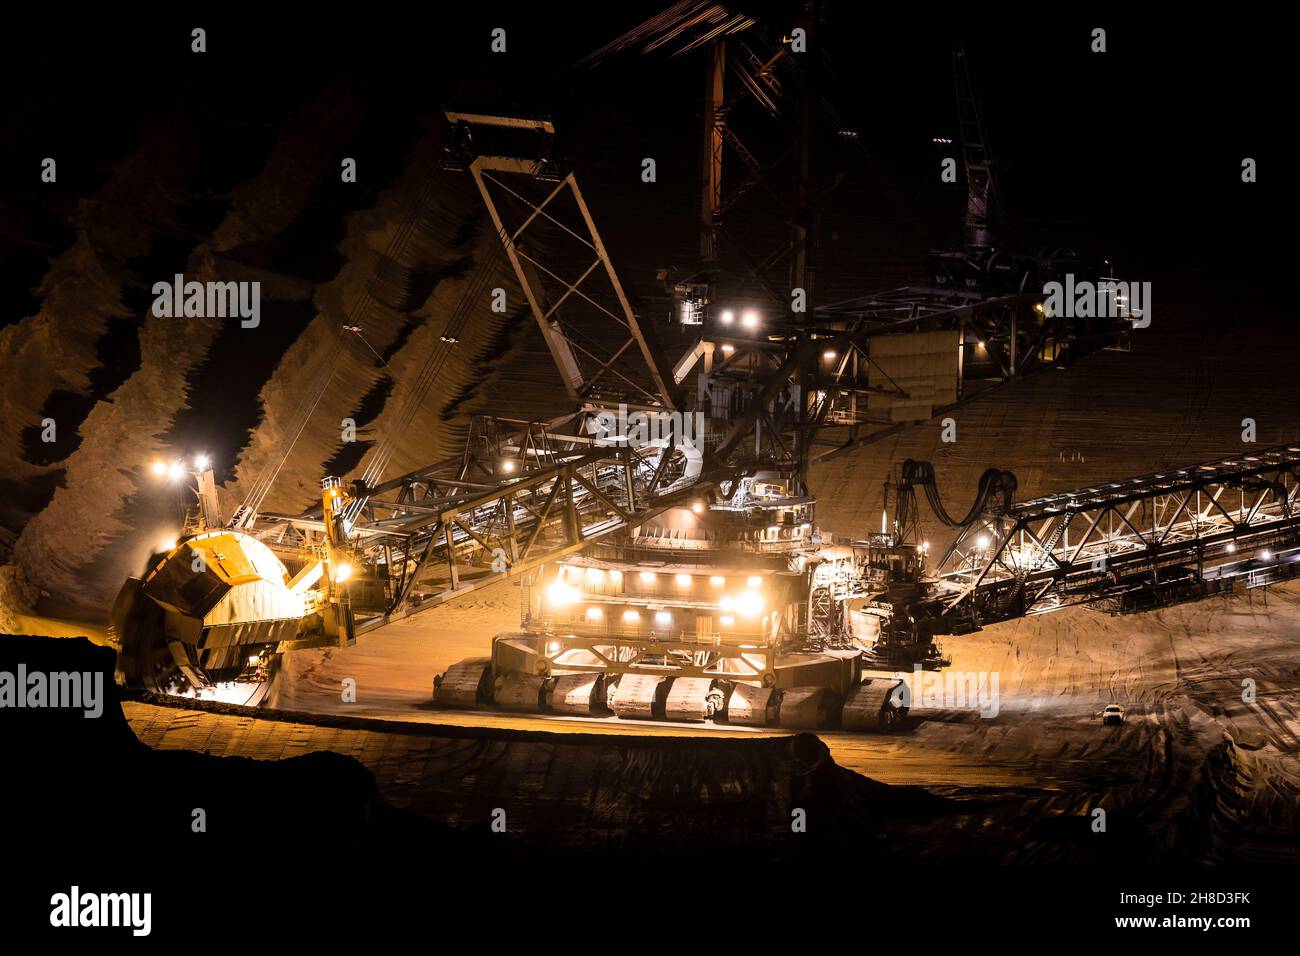 Equipo pesado de minería en funcionamiento en una mina a cielo abierto al atardecer. Foto de stock